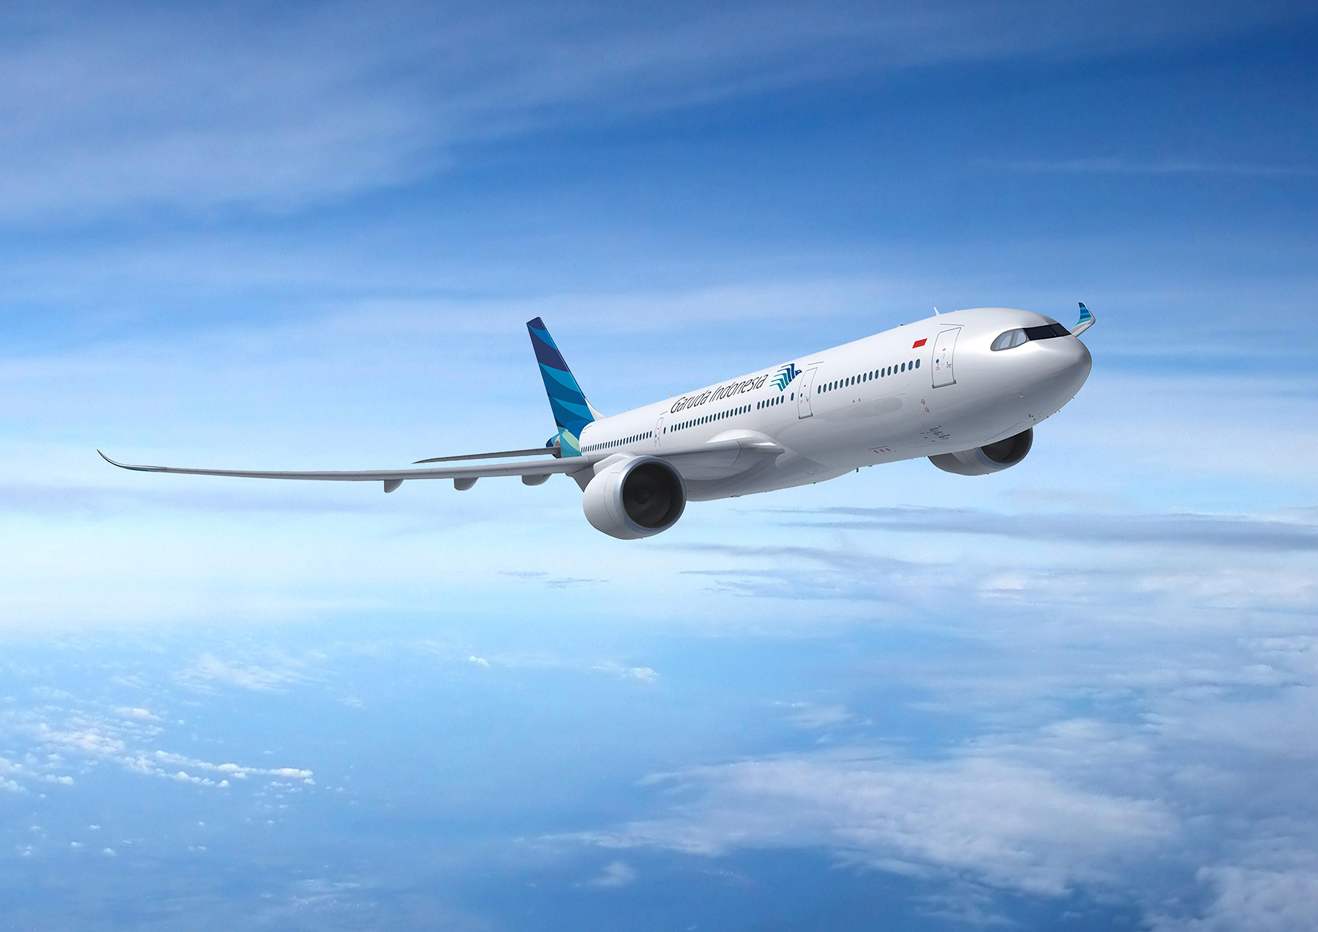 Singapore Airshow 2018 : Thales va équiper Garuda Indonesia en IFE